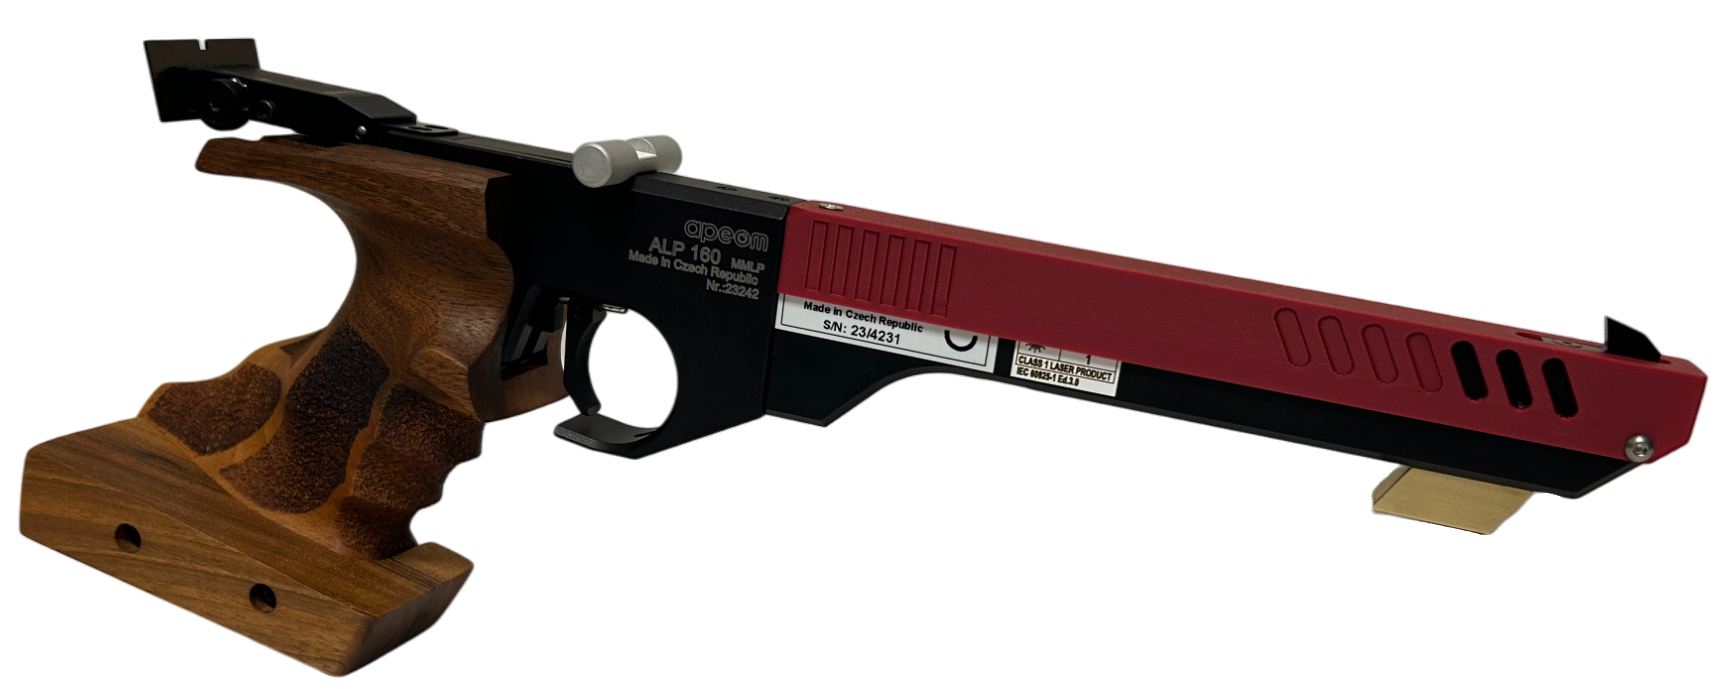 Full laser pistol MMLP  ALP160 CA